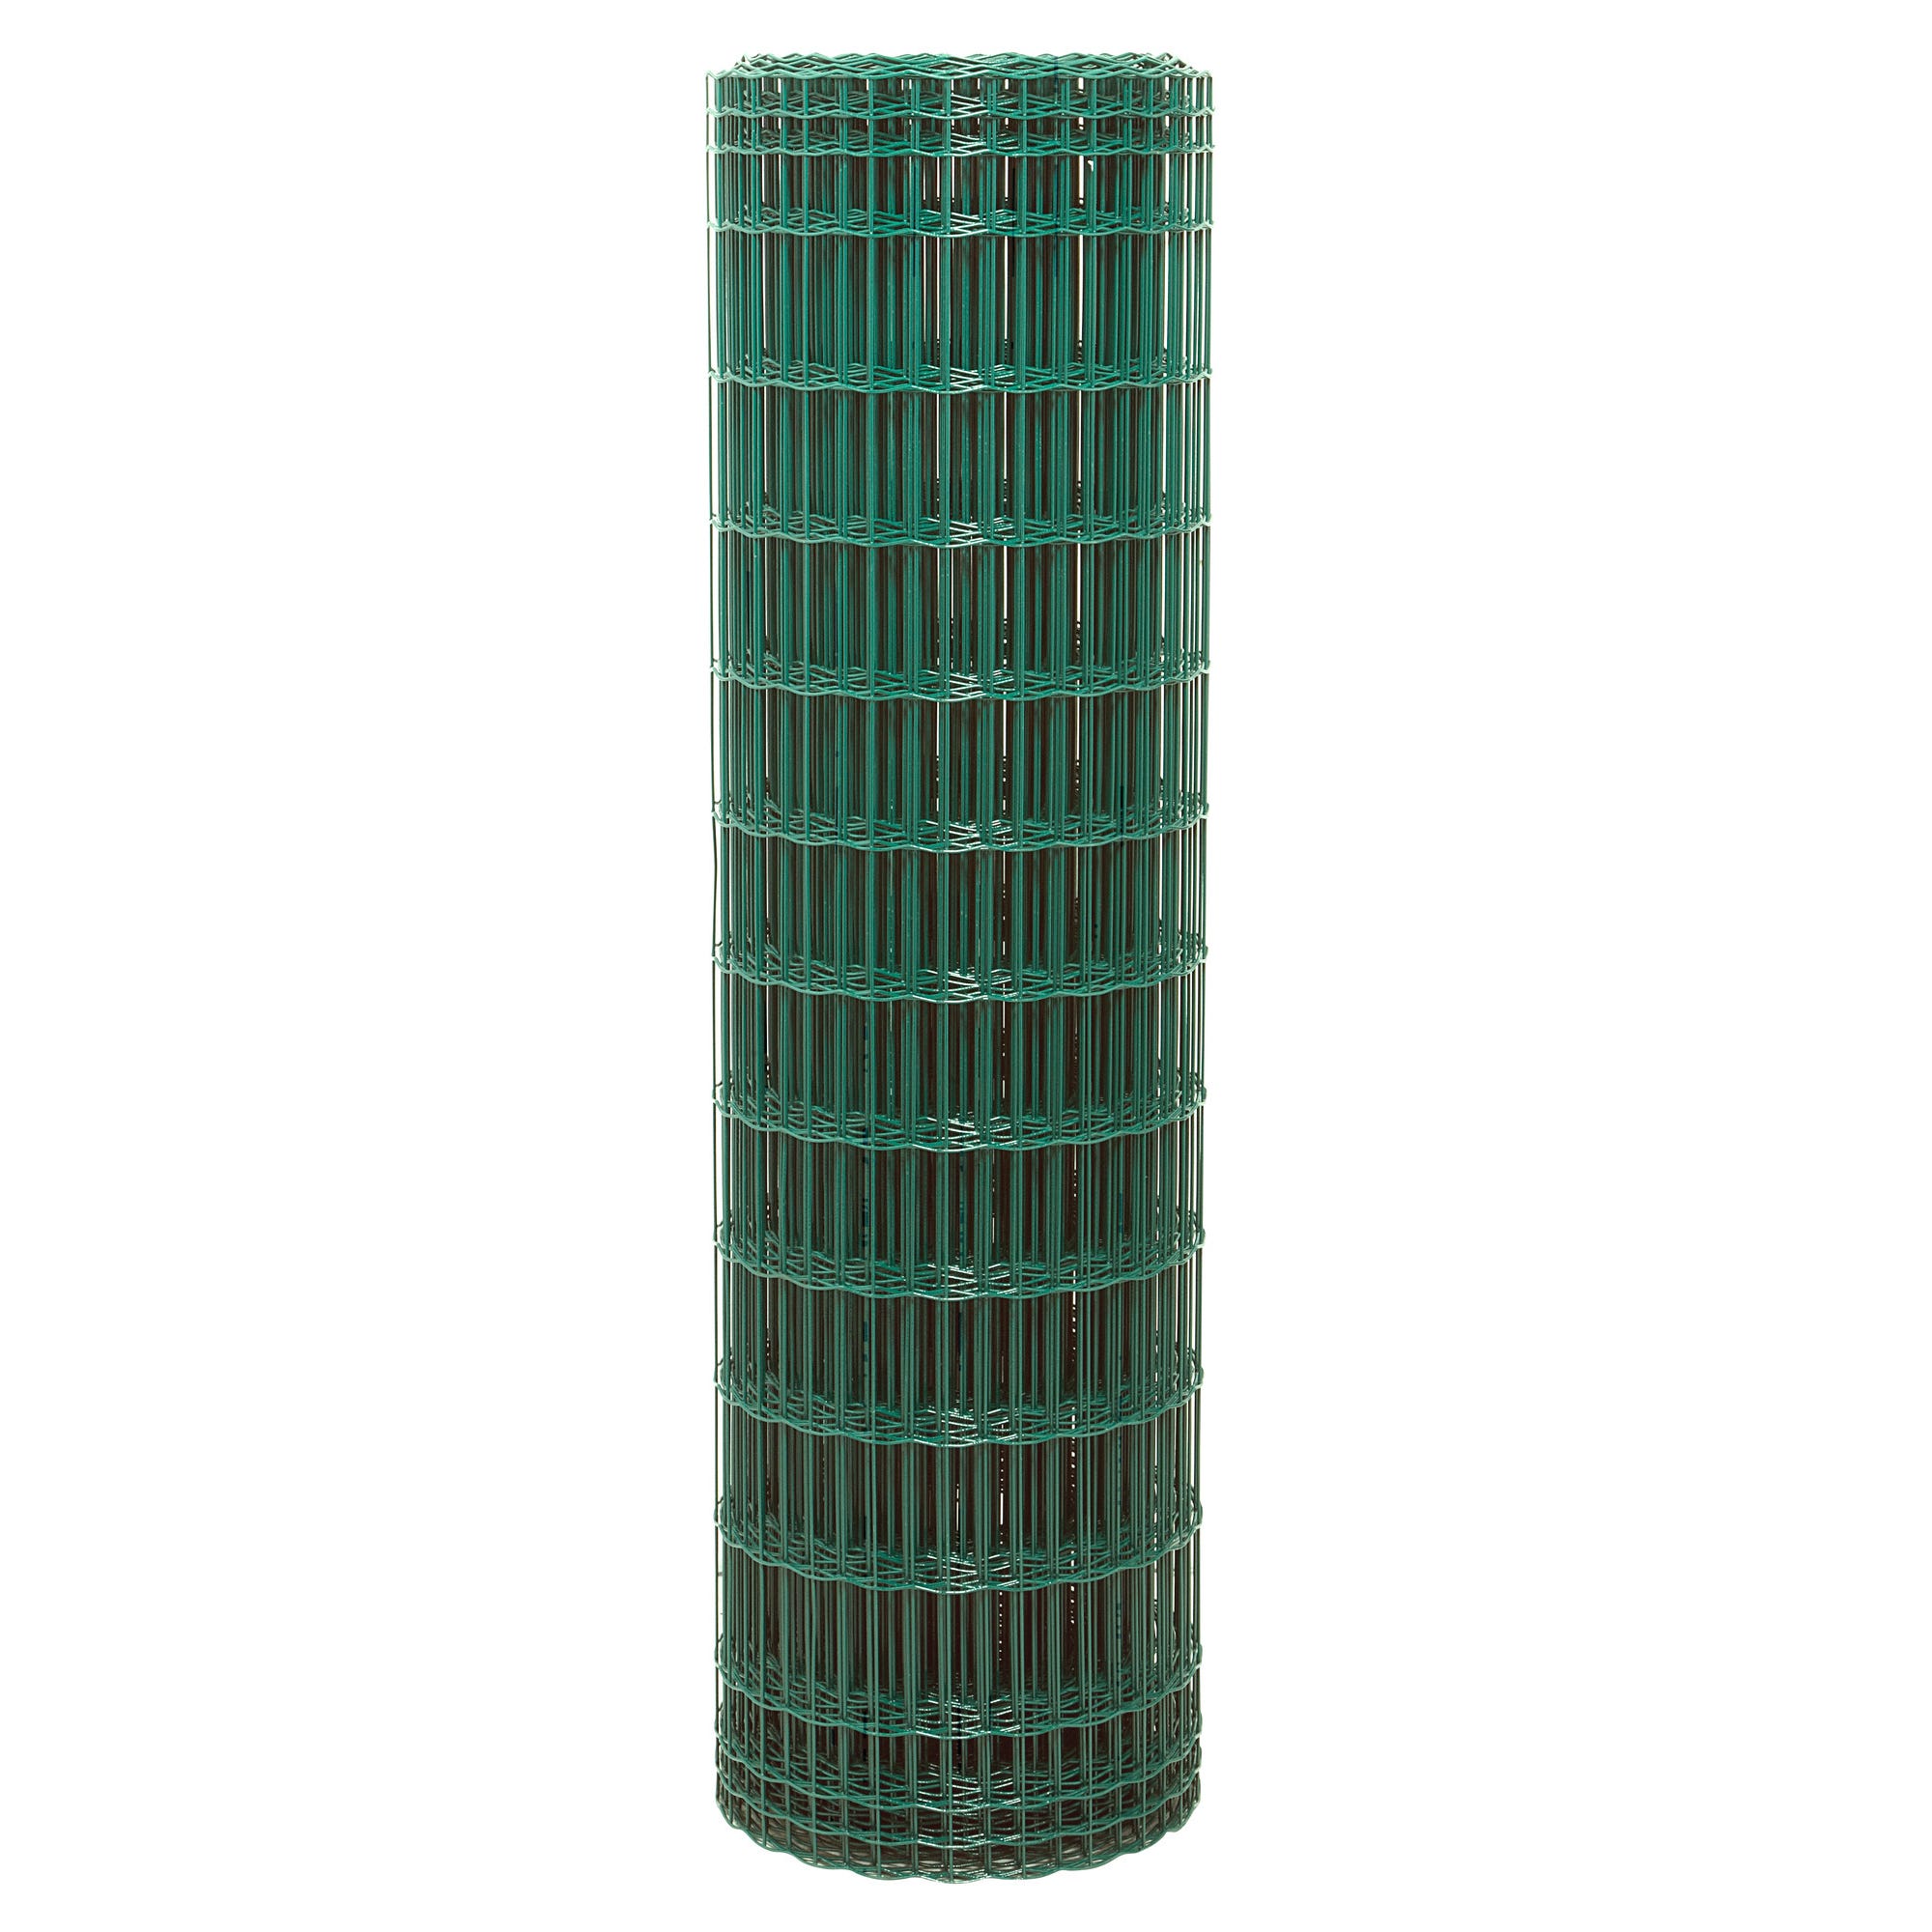 Grillage soudé pro vert maille 100 x 50 mm H.180 cm x L.25 m 1